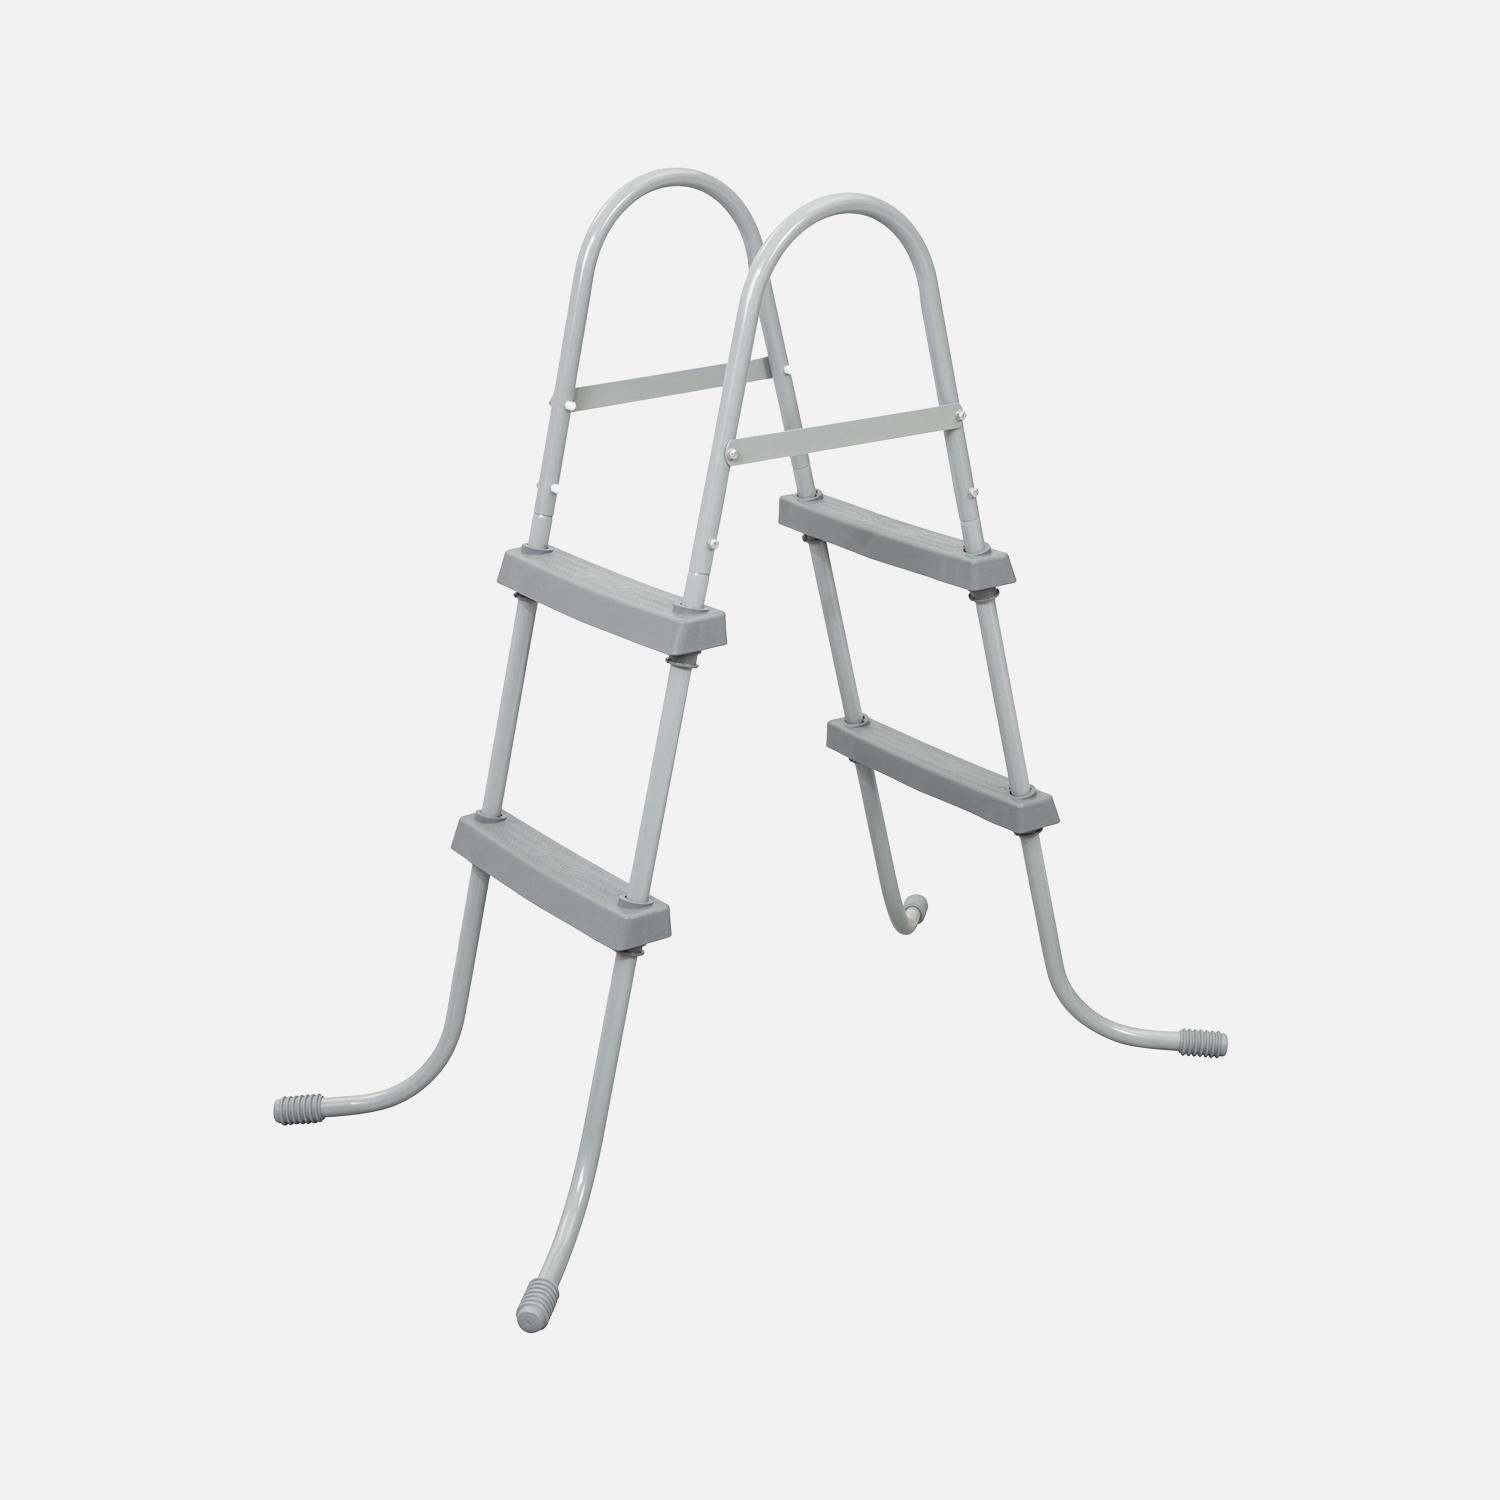 Symmetrische ladder met twee treden voor bovengrondse zwembaden tot 84 cm hoog, zwembadaccessoire Photo1